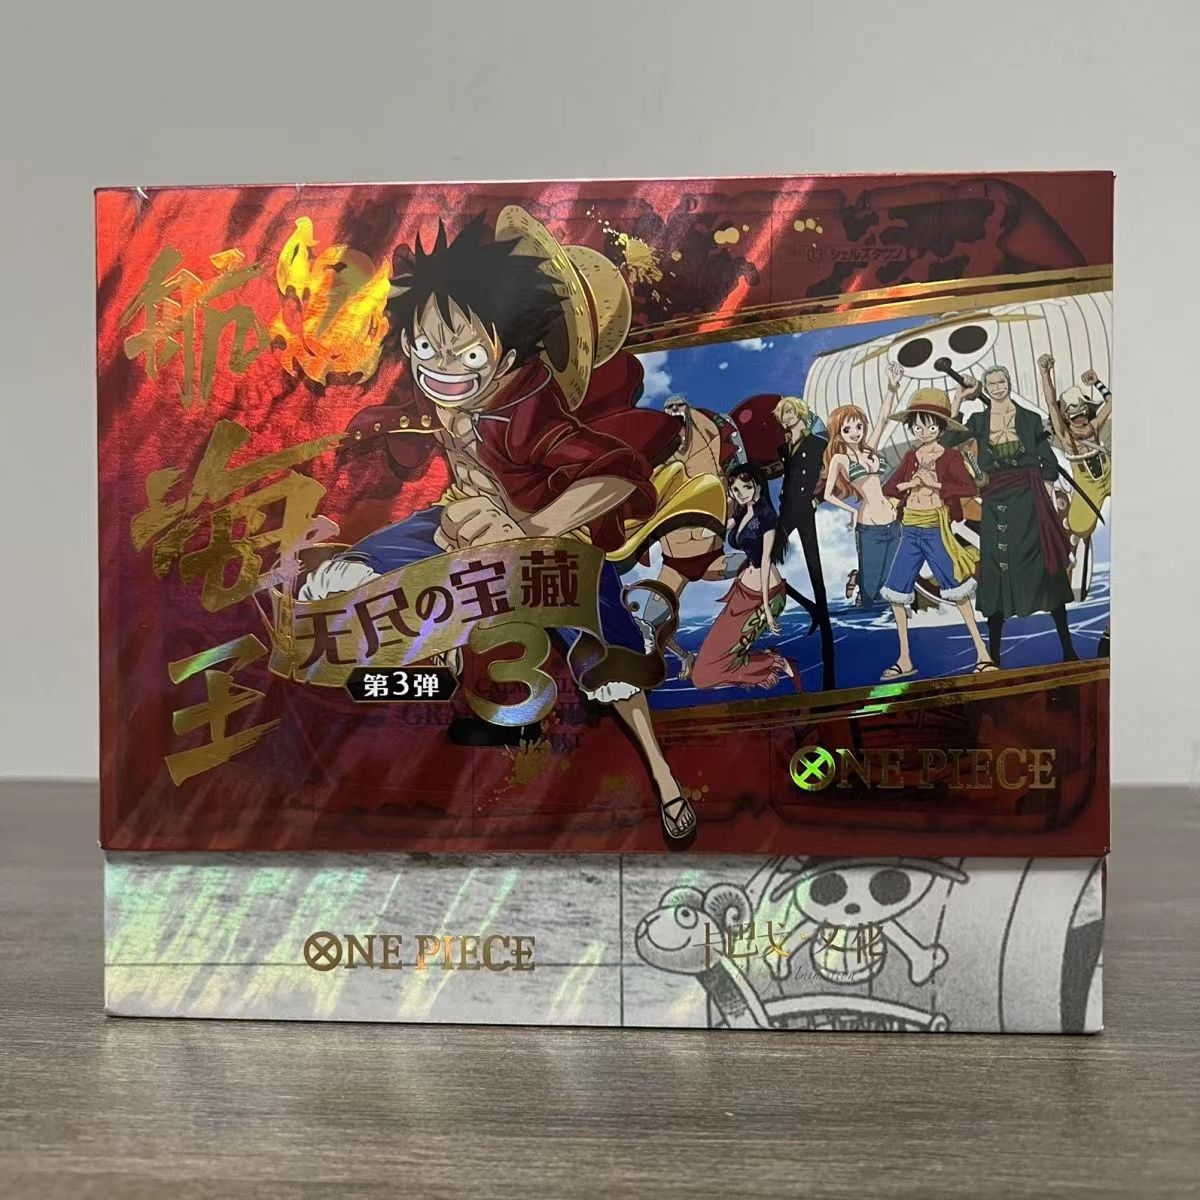 BRAND NEW Manga Box Sets (One Piece, Naruto, Pokemon) - books